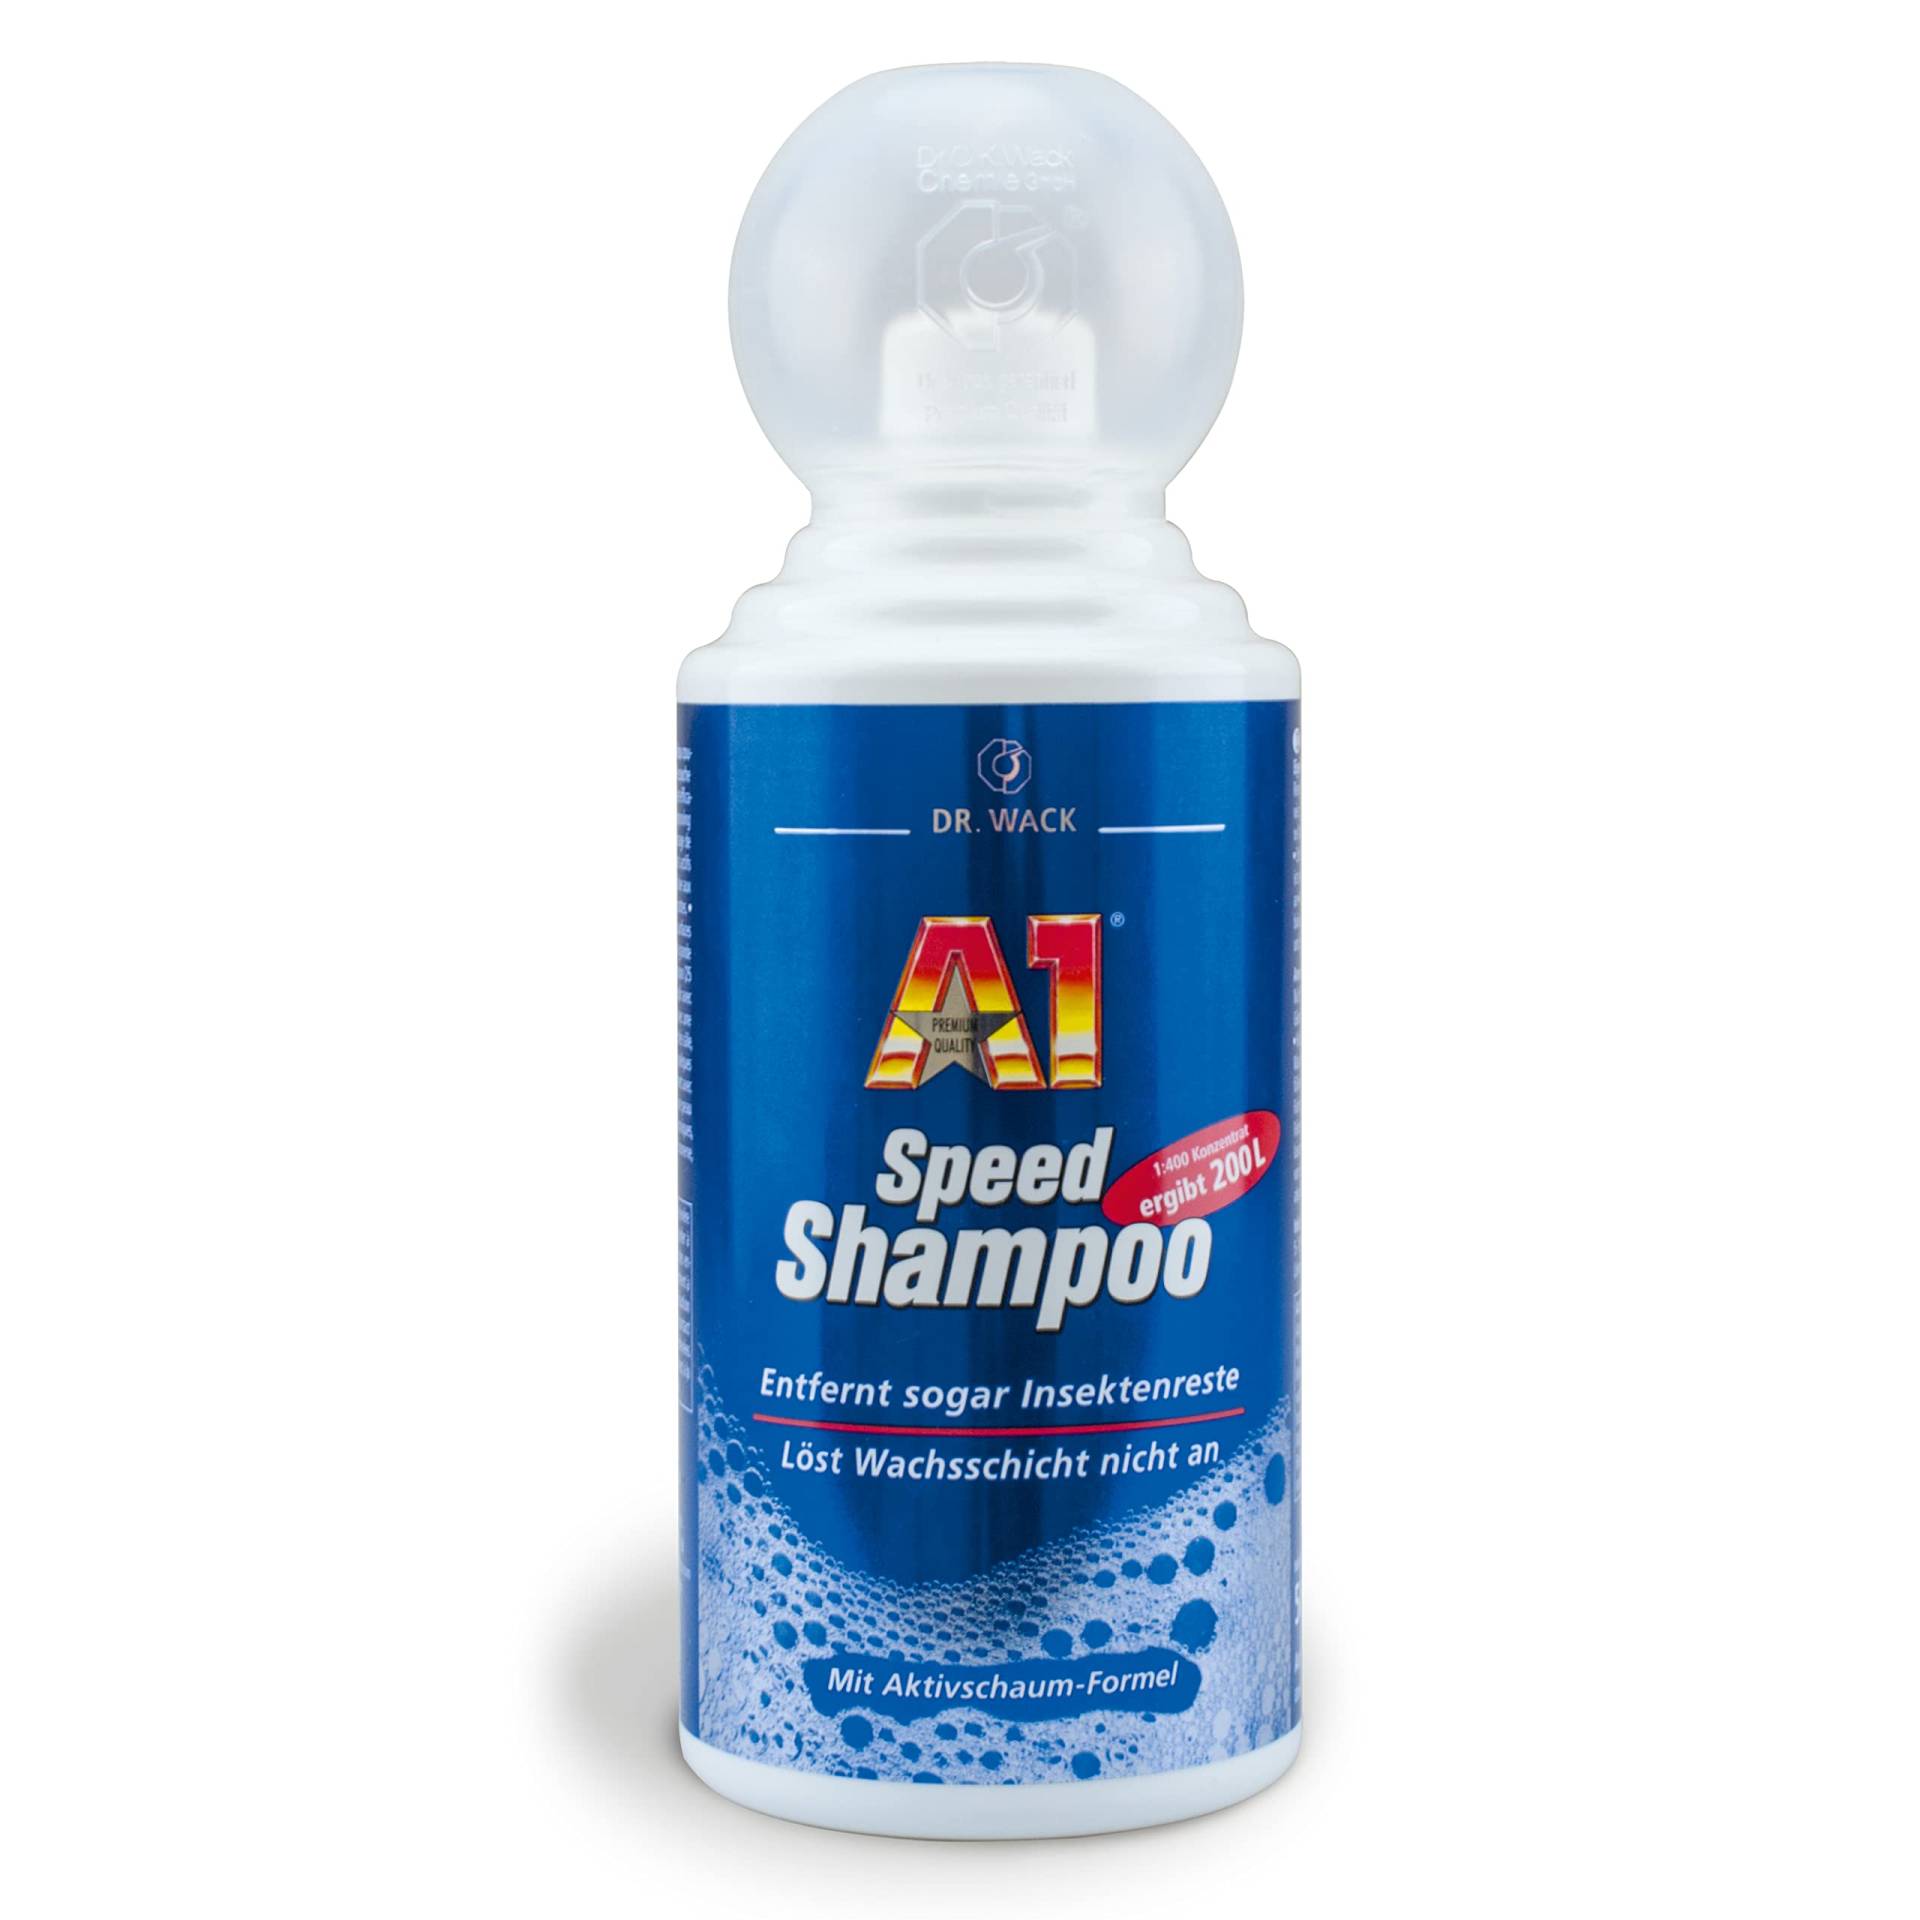 DR. WACK - A1 Speed Shampoo 500 ml - Effektiver Autoreiniger mit Aktivschaum-Formel - Gründliche & schonende Entfernung hartnäckiger Verschmutzungen - für alle Lackarten - Hochwertige Autopflege von DR. WACK